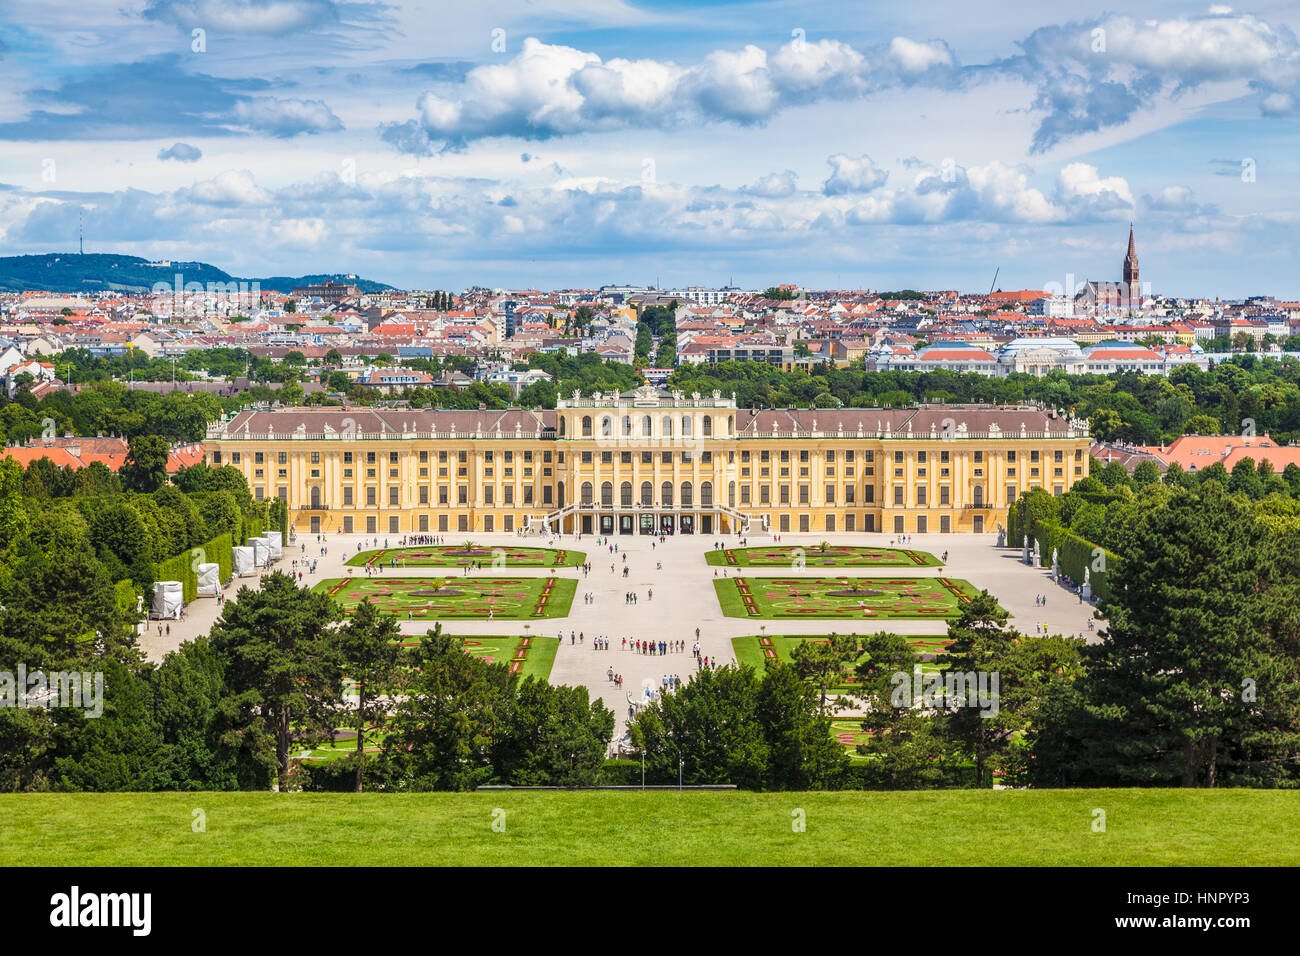 Visualizzazione classica del famoso Palazzo di Schonbrunn con scenic grande parterre giardino in una bella giornata di sole con cielo blu e nuvole, Vienna, Austria Foto Stock